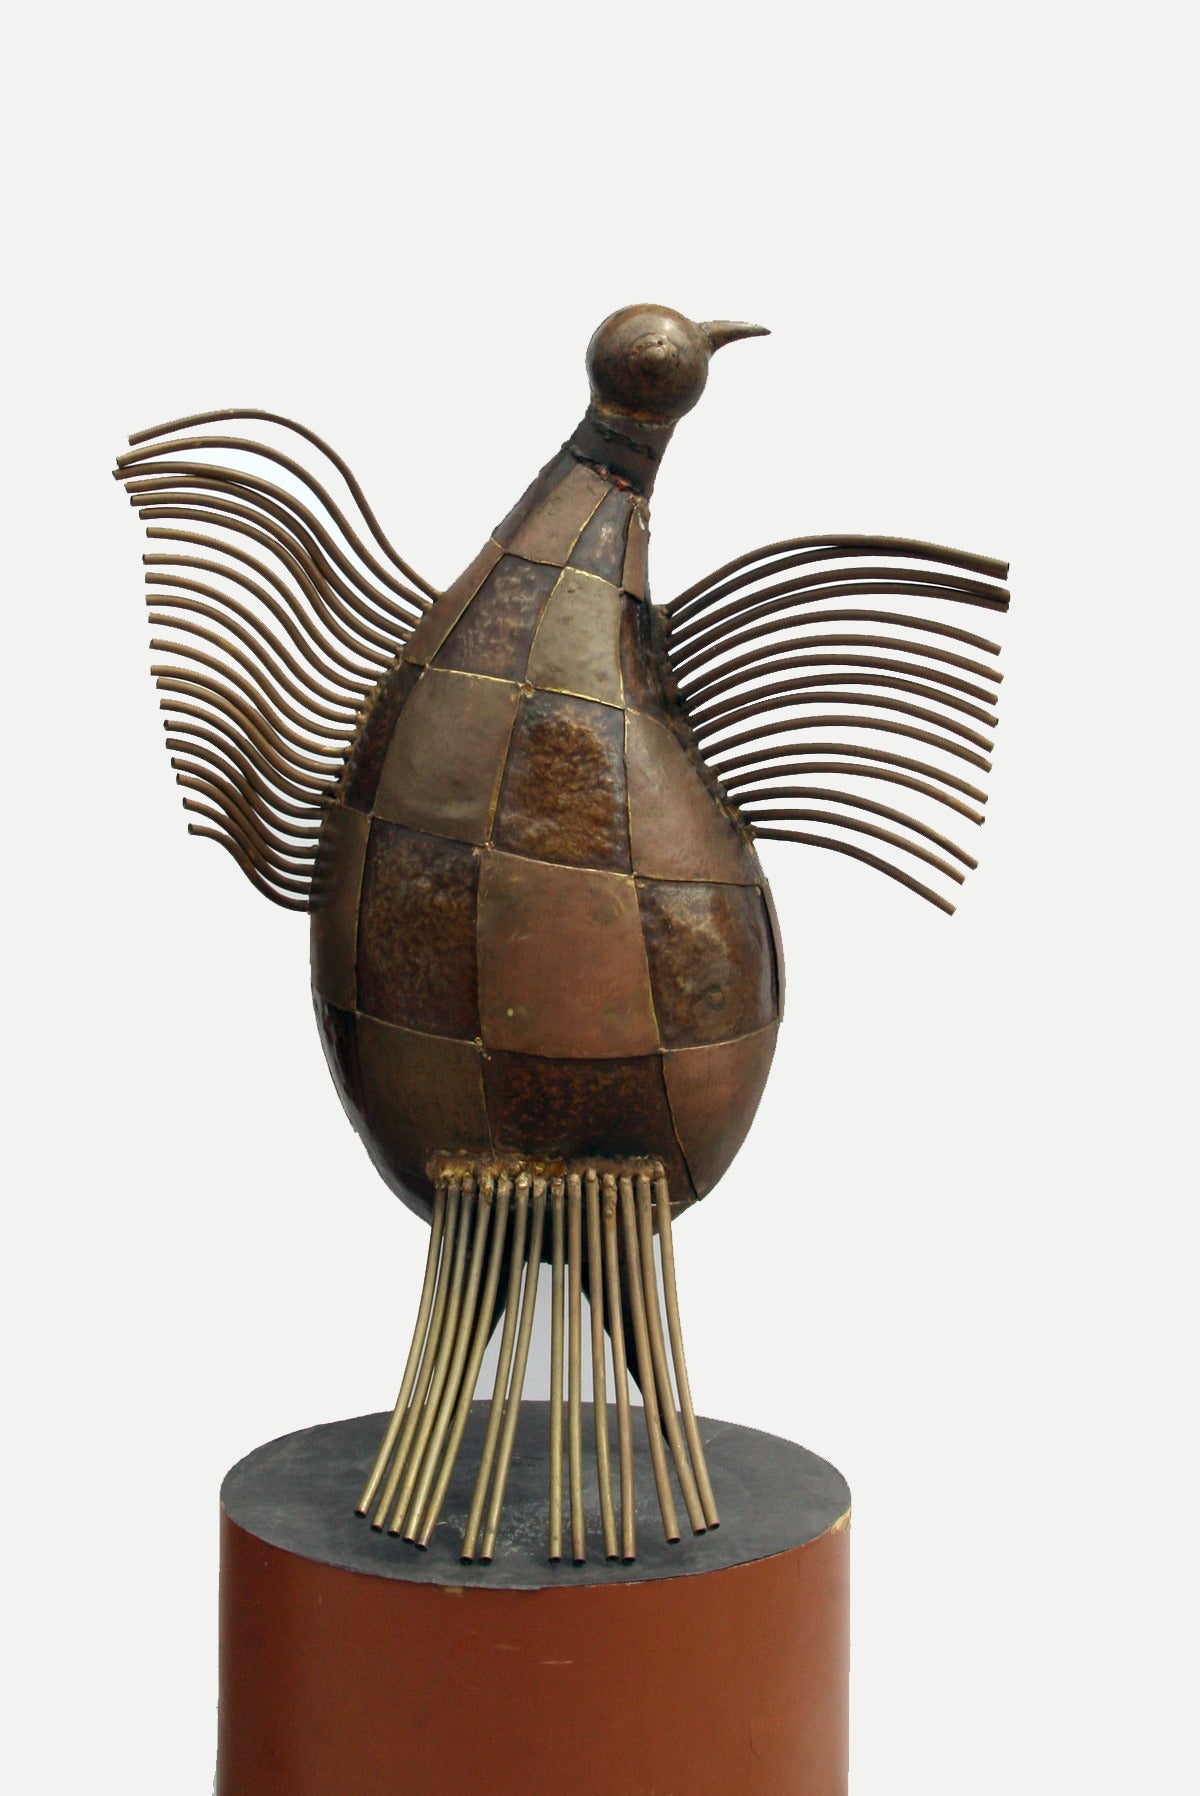 Eine Bronzeskulptur von Victor Delfin, um 1970. Eine skurrile, abstrahierte Vogelfigur in einer glückseligen Pose mit ausgebreiteten Flügeln. 
 
Künstler: Victor Delfin, Peruaner (1927 - )
Titel: Baby-Kondor
Jahr: ca. 1970
Medium: Geschweißte